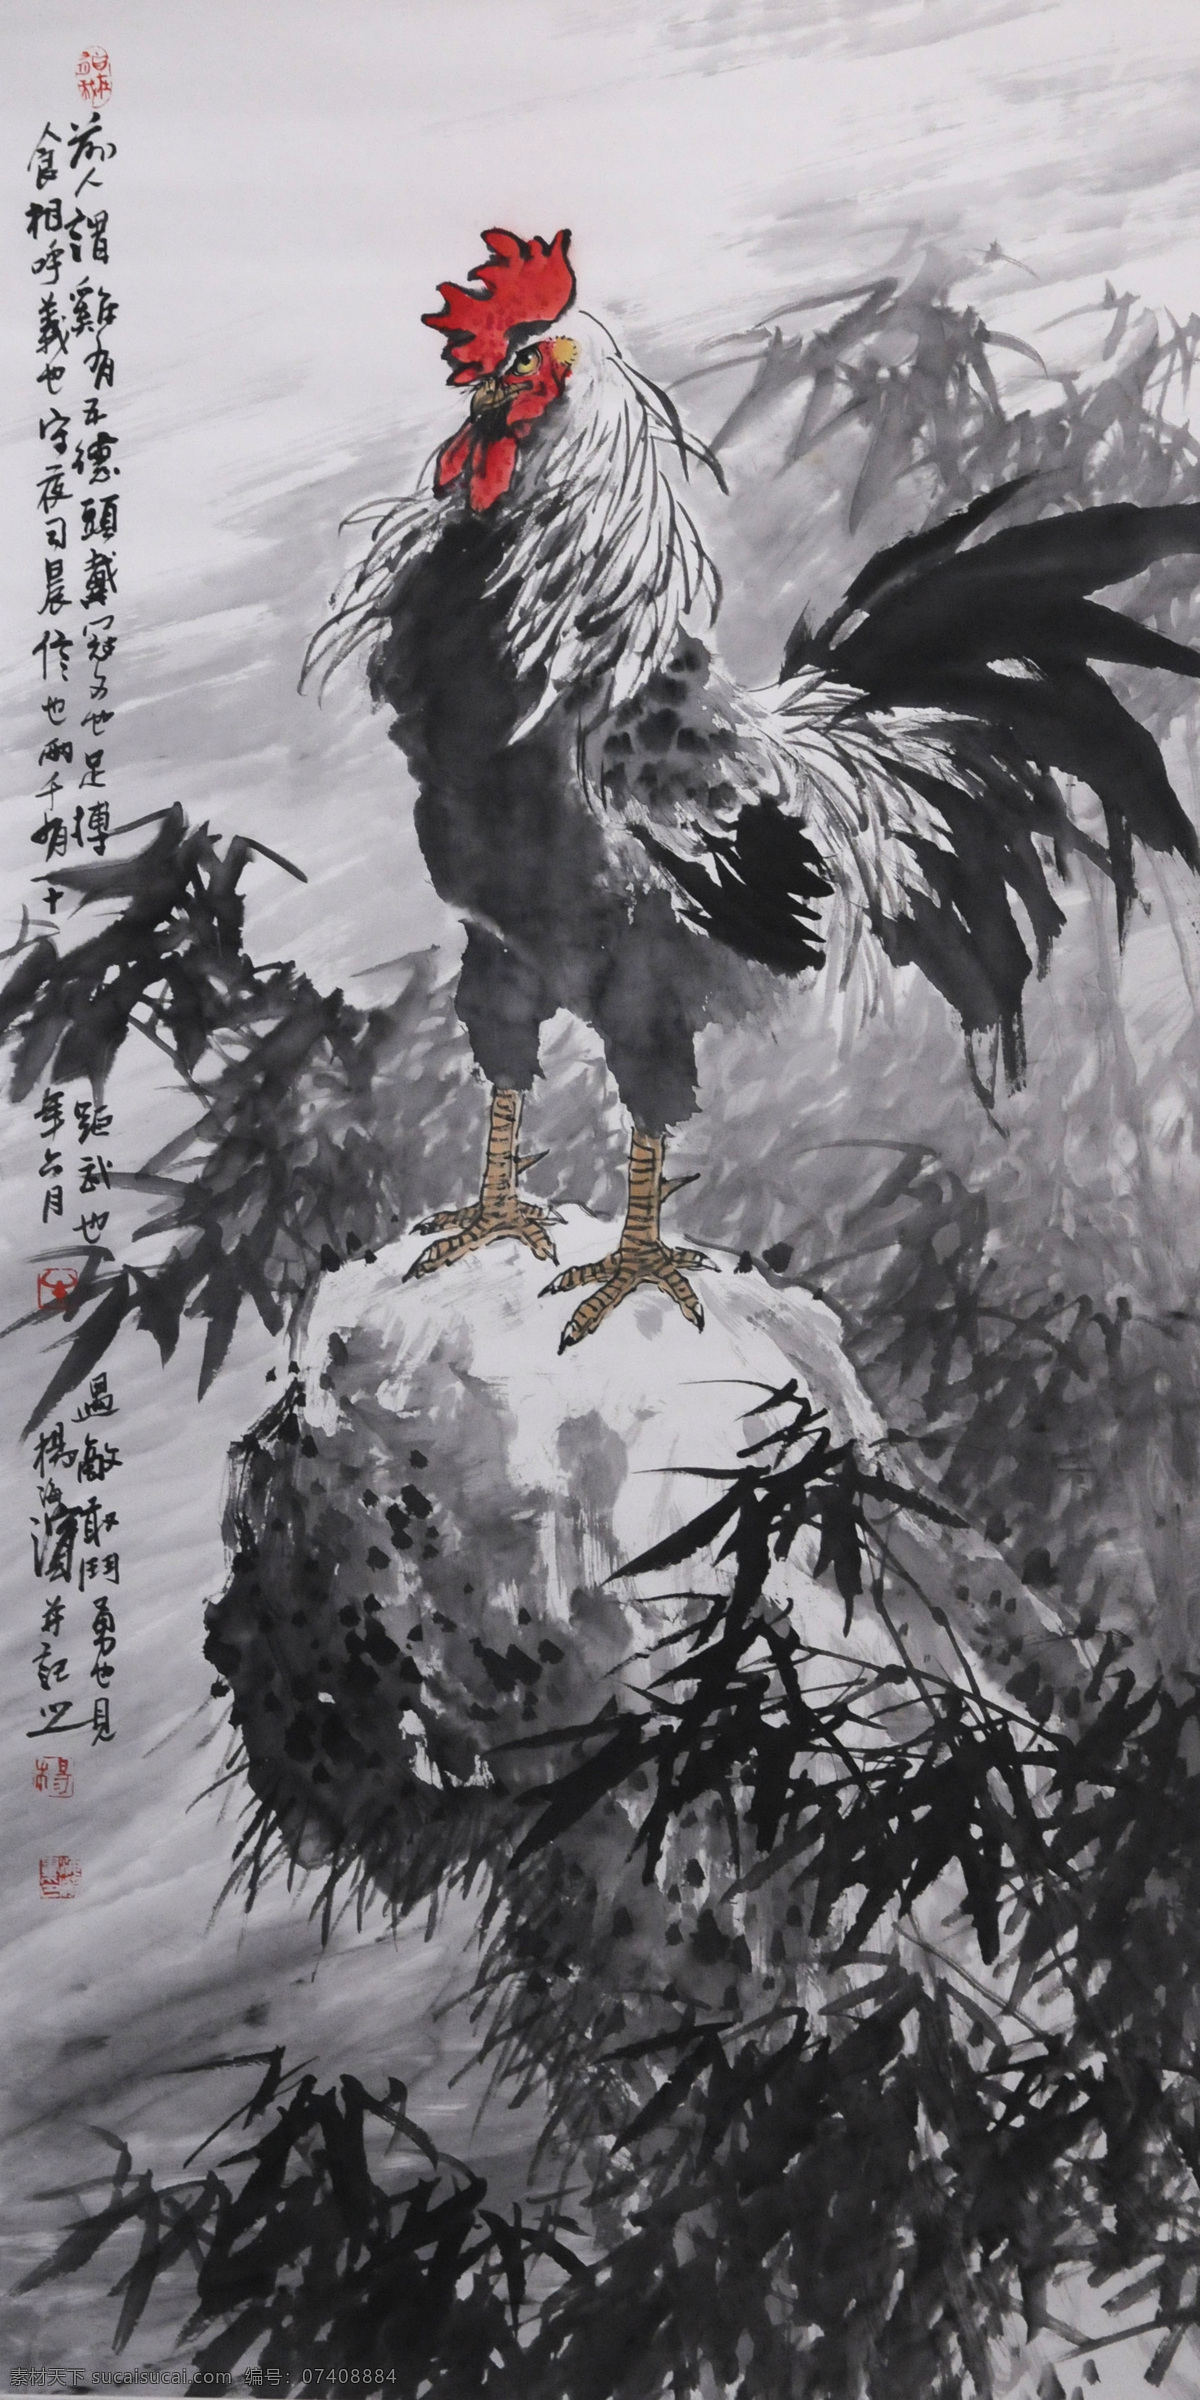 中国画 五德 图 大吉大利 动物 国粹 花鸟画 水墨画 雄鸡 写意画 家居装饰素材 无框画